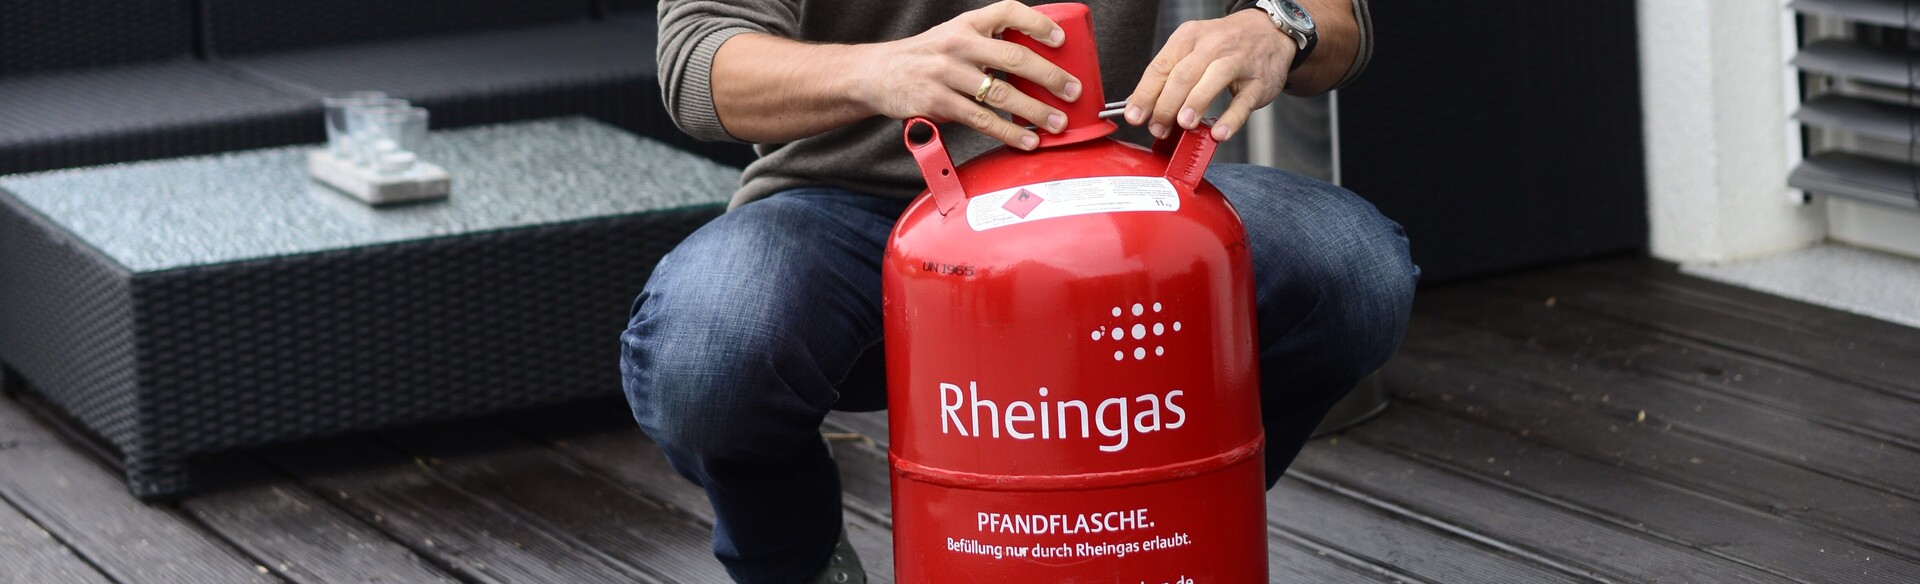 Mann hat eine rote mit Propan-Gas gefüllte Gasflasche von Rheingas gekauft und platziert sie auf der Terrasse.